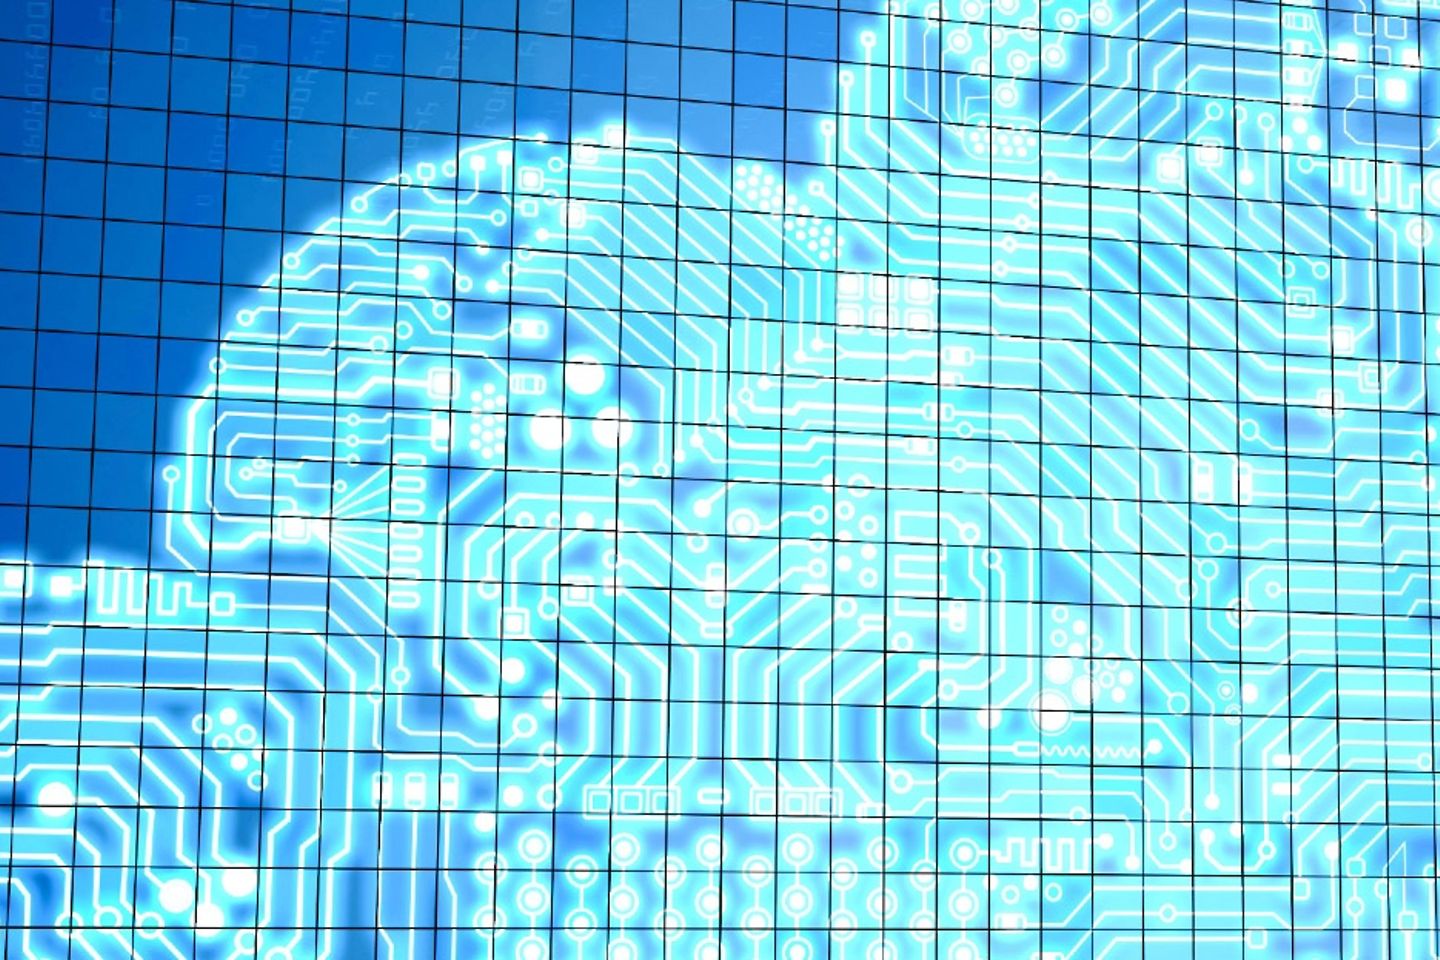 Representación virtual de una nube rodeada por códigos binarios